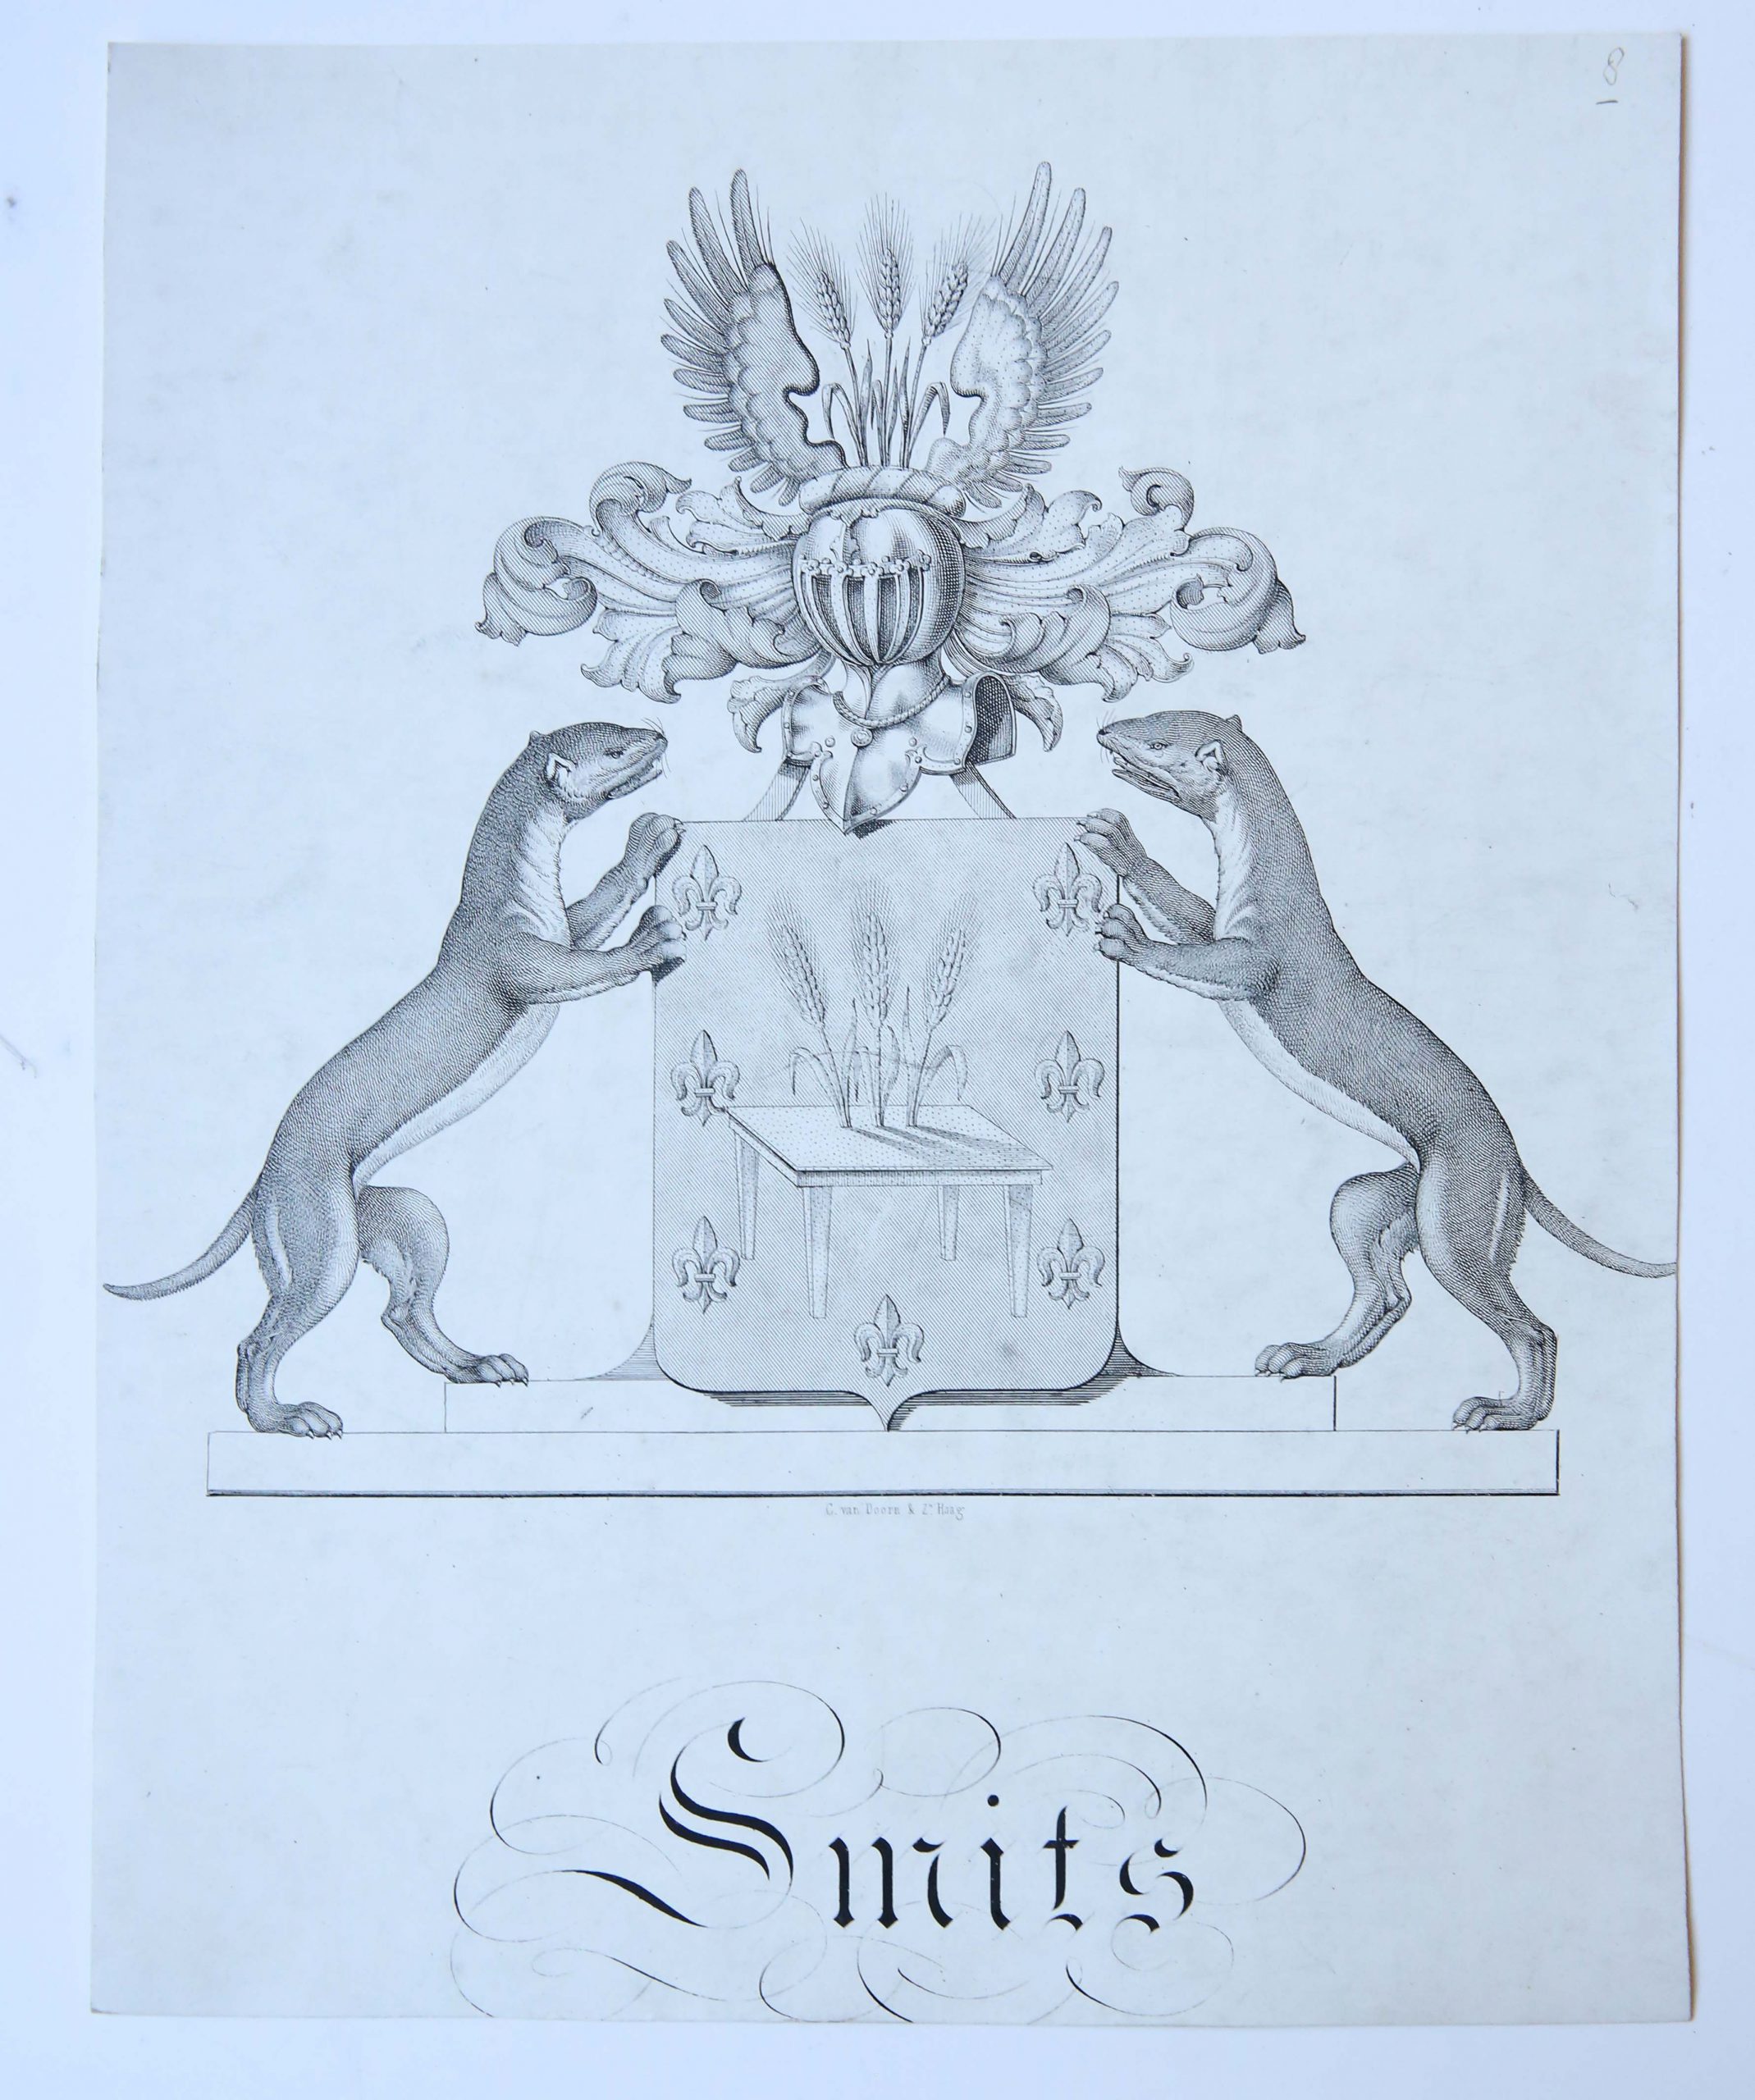 [Smits] - Wapenkaart/Coat of Arms Smits.